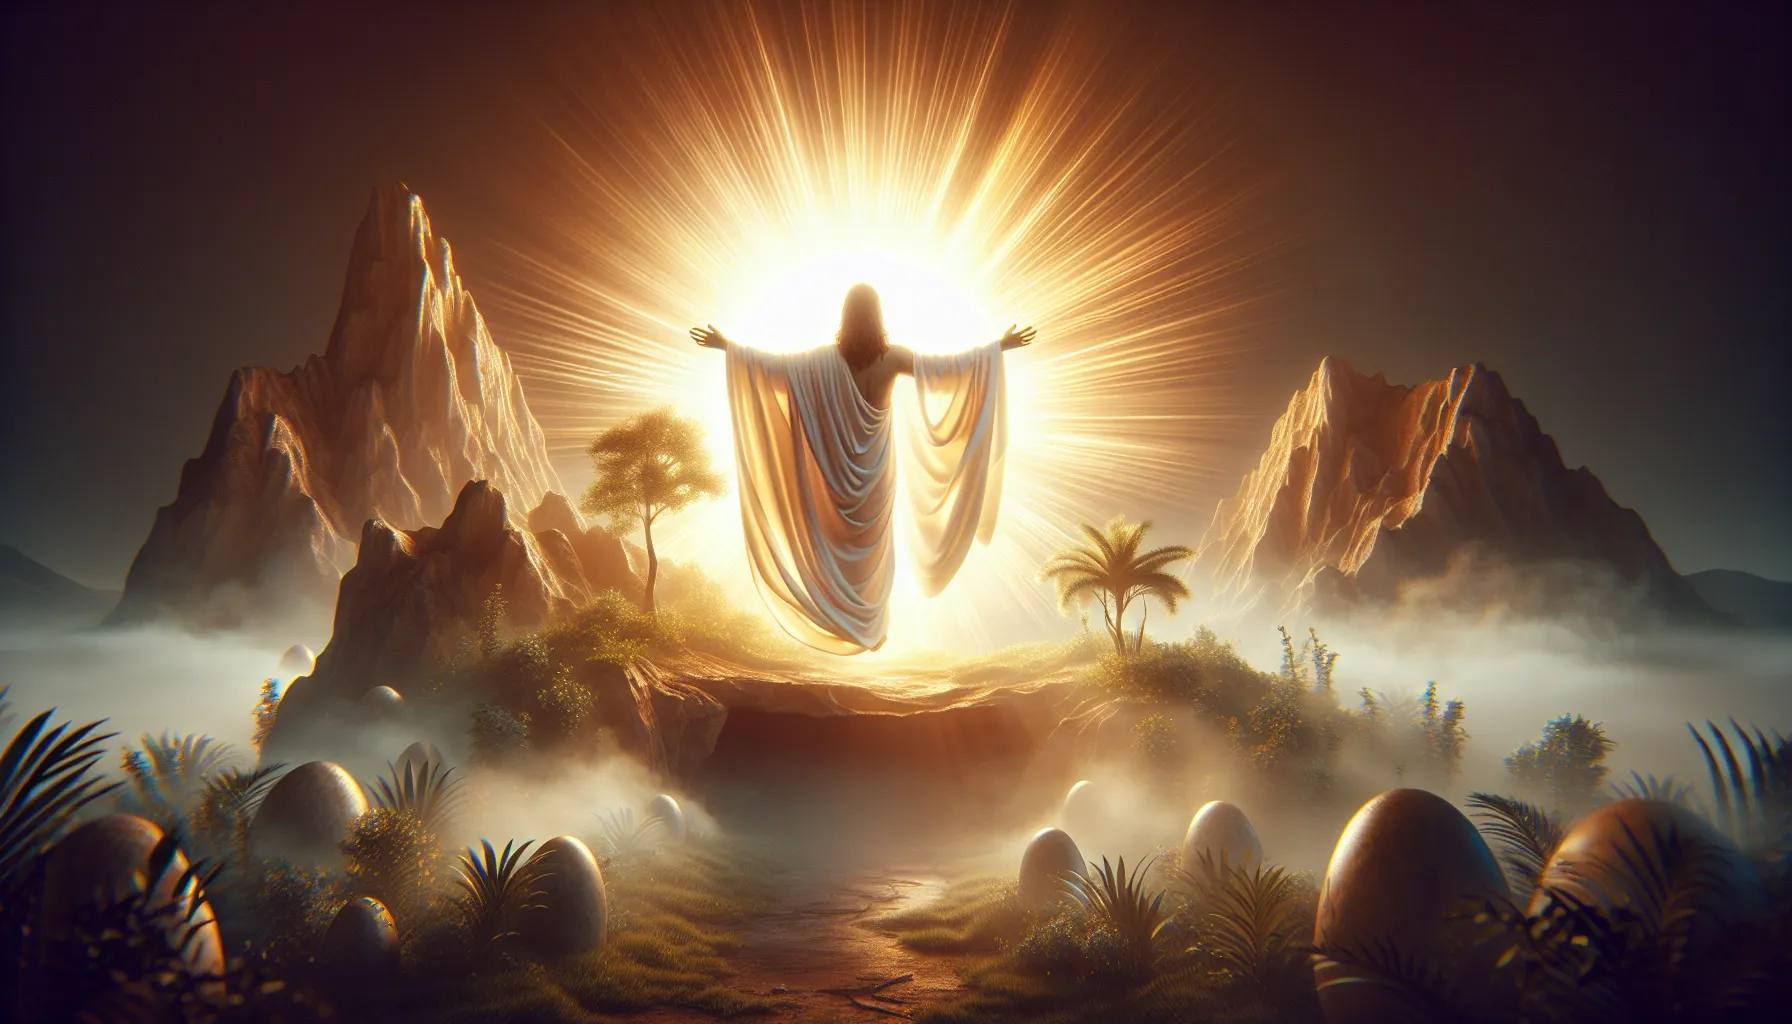 Representación simbólica de la resurrección de Jesús y base de la fe cristiana